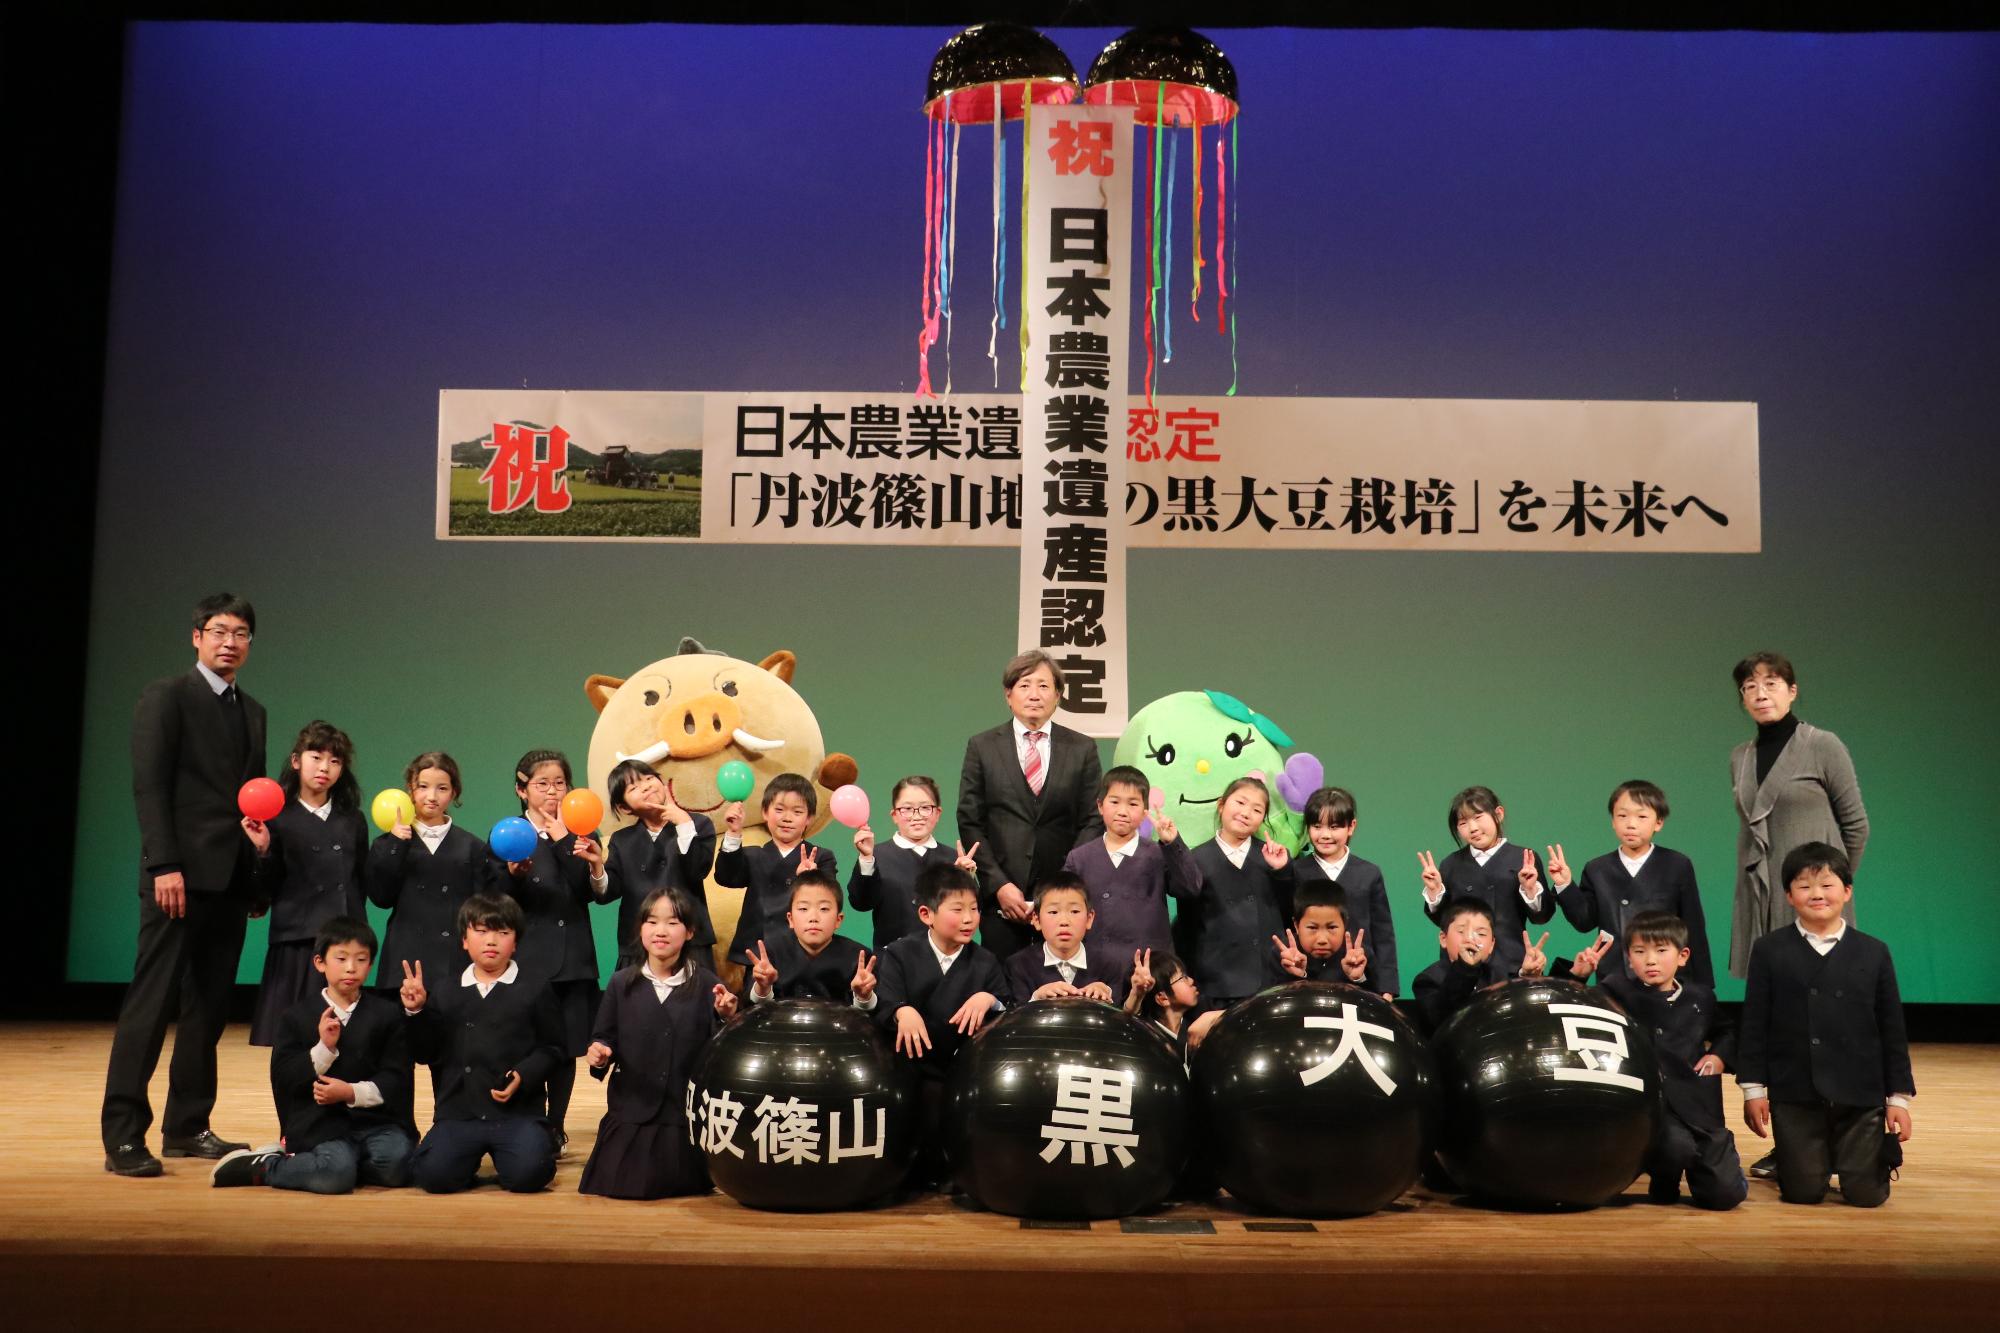 日本農業遺産認定を祝うくす玉と、小学校のこどもたち、まるいのとまめりんが舞台で記念撮影している。